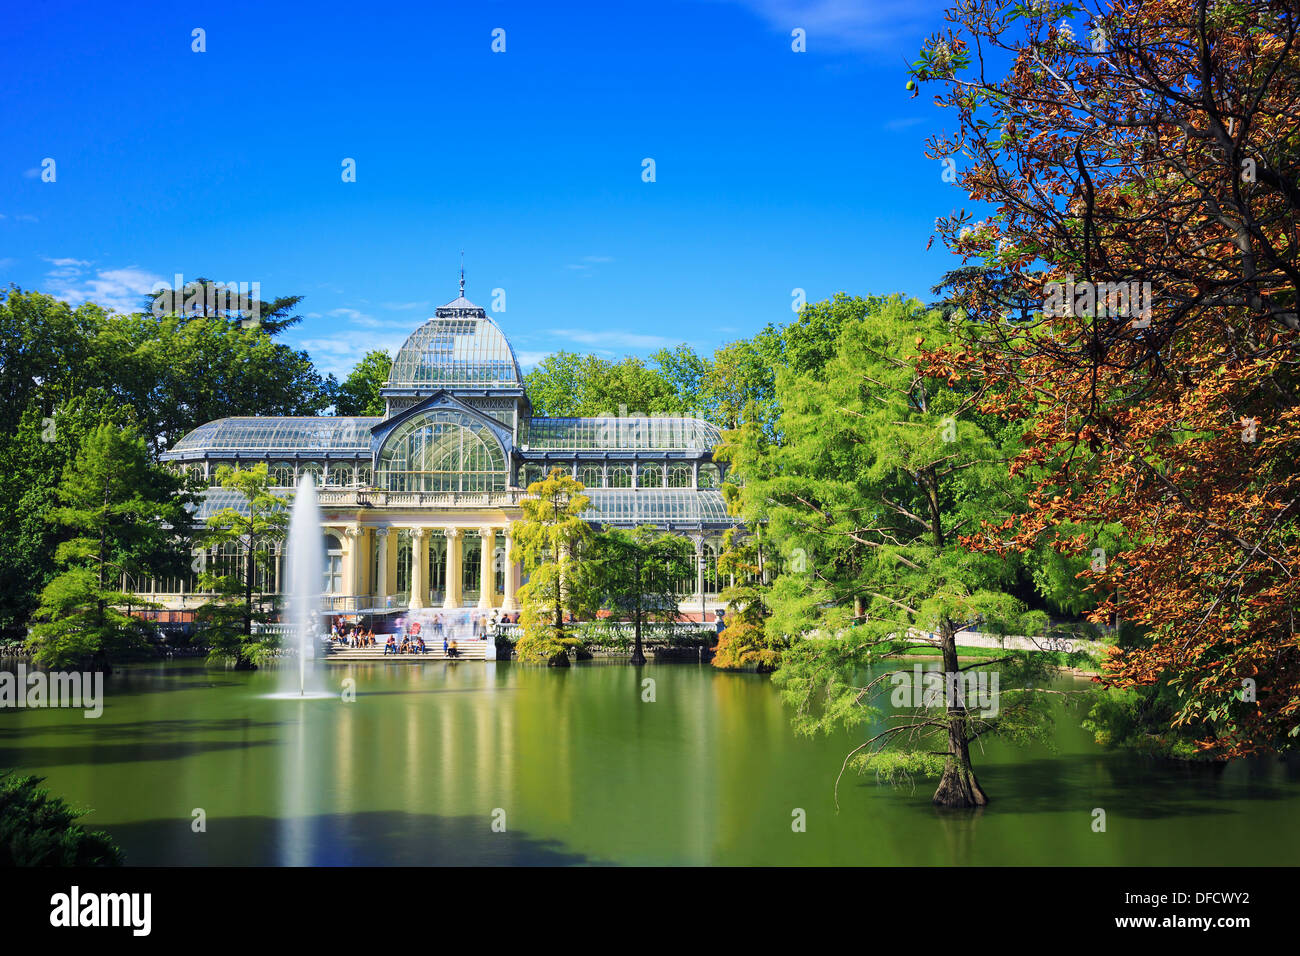 Crystal Palace (Palais de cristal) dans le parc du Retiro, Madrid, Espagne. Banque D'Images